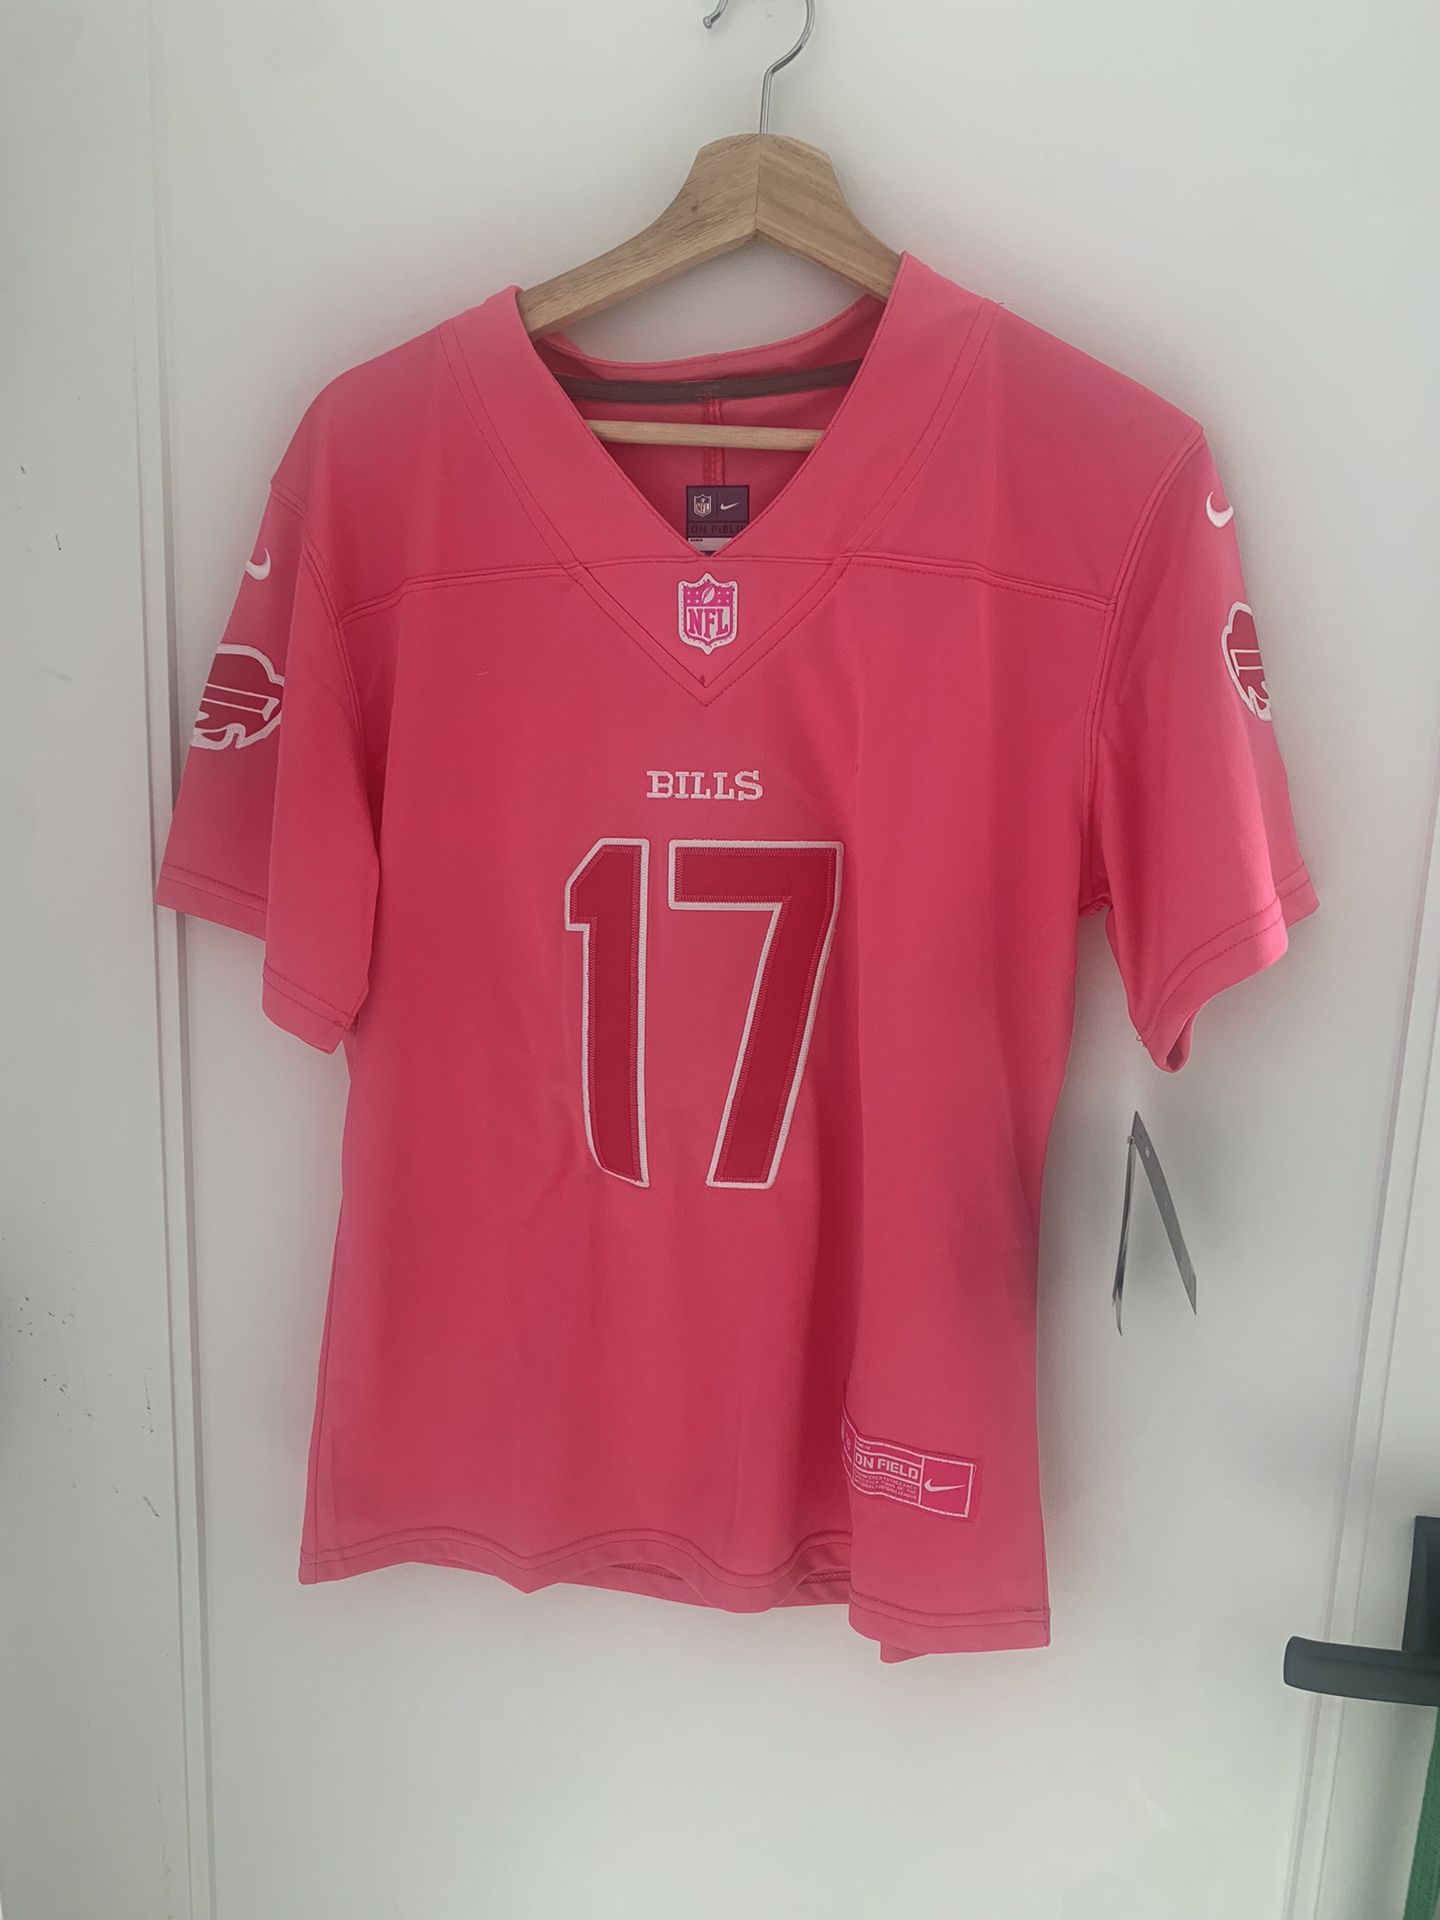 Pink NFL Josh Allen/Buffalo Bills Jersey for Sale in Brooklyn, NY